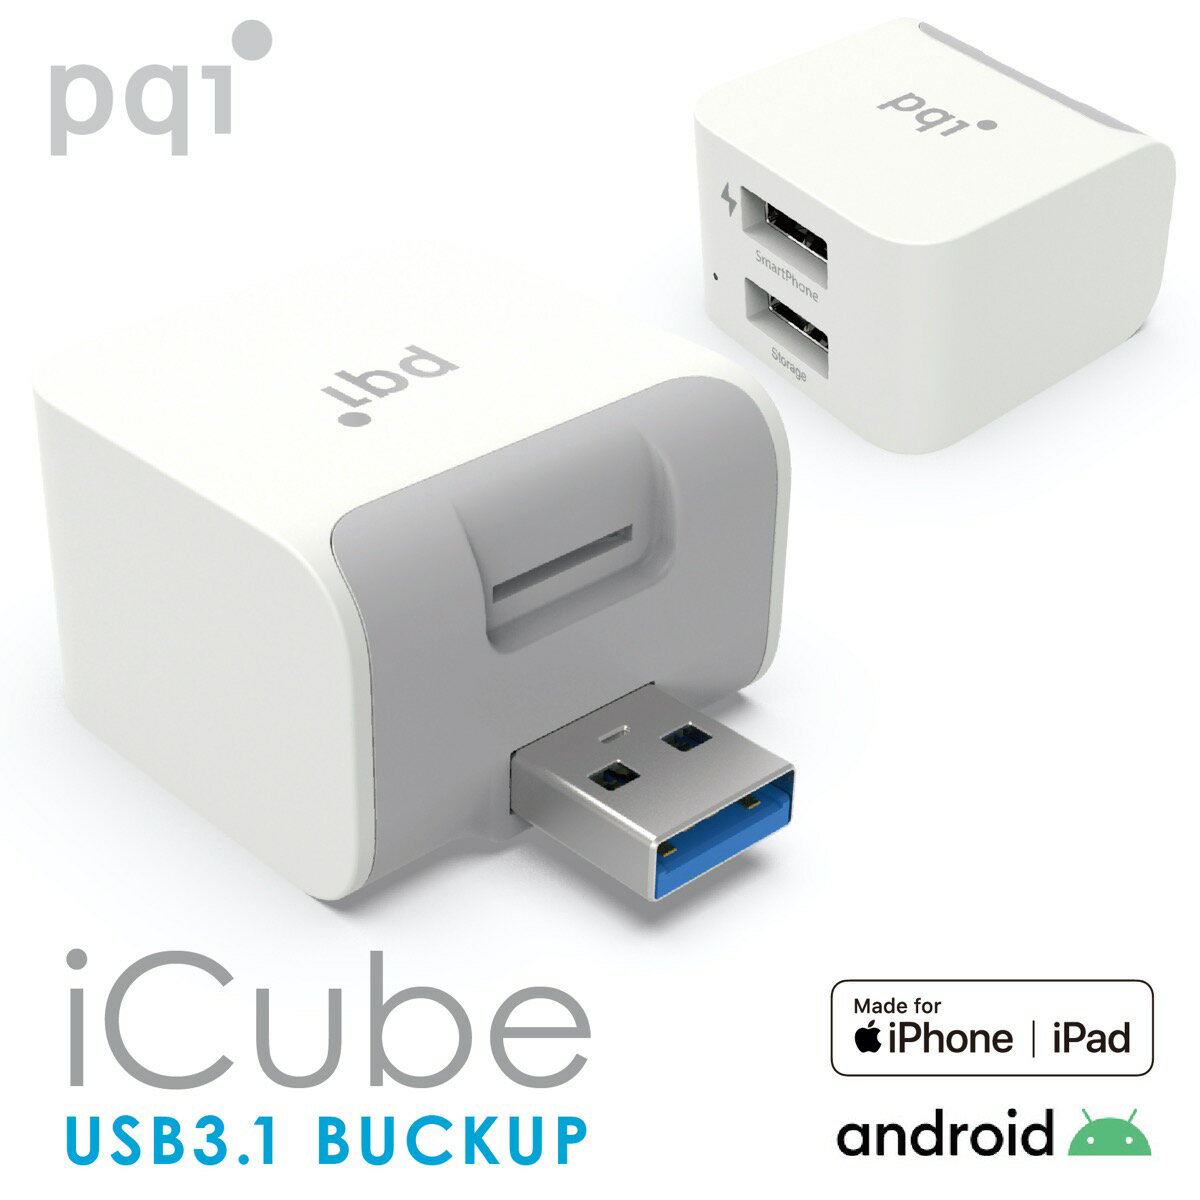 PQI iCube アイキューブ iPhone Android 両対応 充電 自動バックアップ micro SD カードリーダー USBメモリ MFi認証 PC不要 USB3.1Qubii キュービー ICB-WH